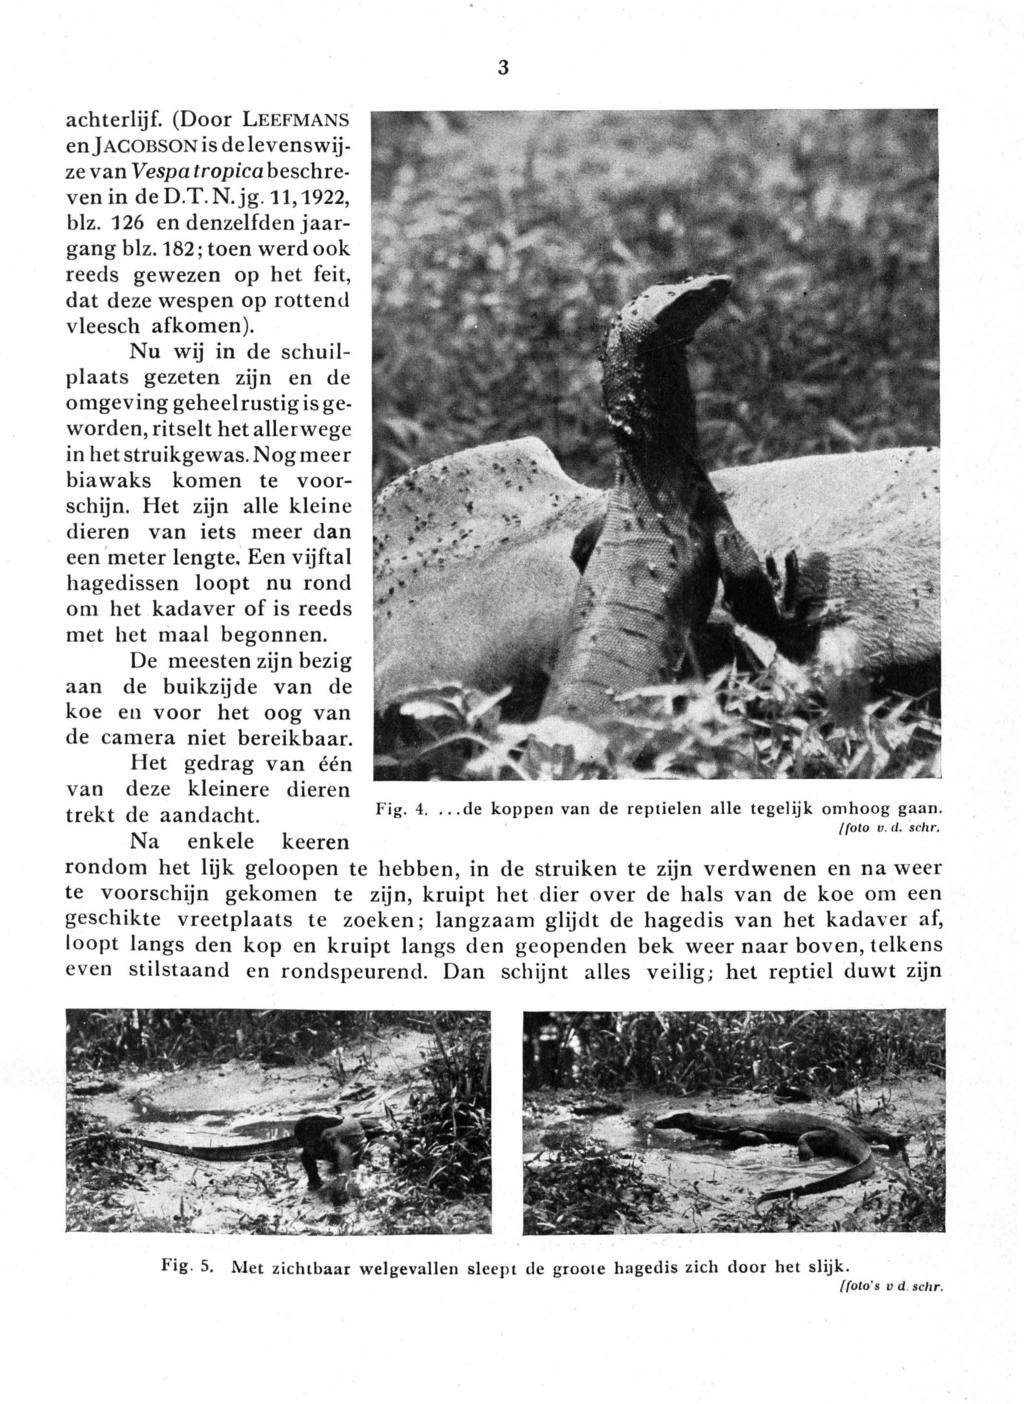 achterlijf. (Door LEEFMANS en]acobson is de levenswijze van Vespa tropica beschreven in ded.t.n.jg.11,1922, blz. 126 en denzelfden jaargang blz.